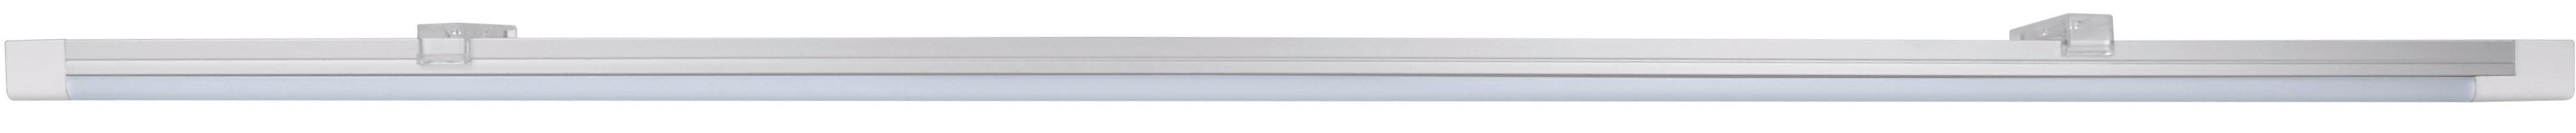 Unterbauleuchte 1x Led 15 W, aus Kunststoff Weiß 220-240 V - Weiß, Basics, Kunststoff (90/3,2/1,4cm)